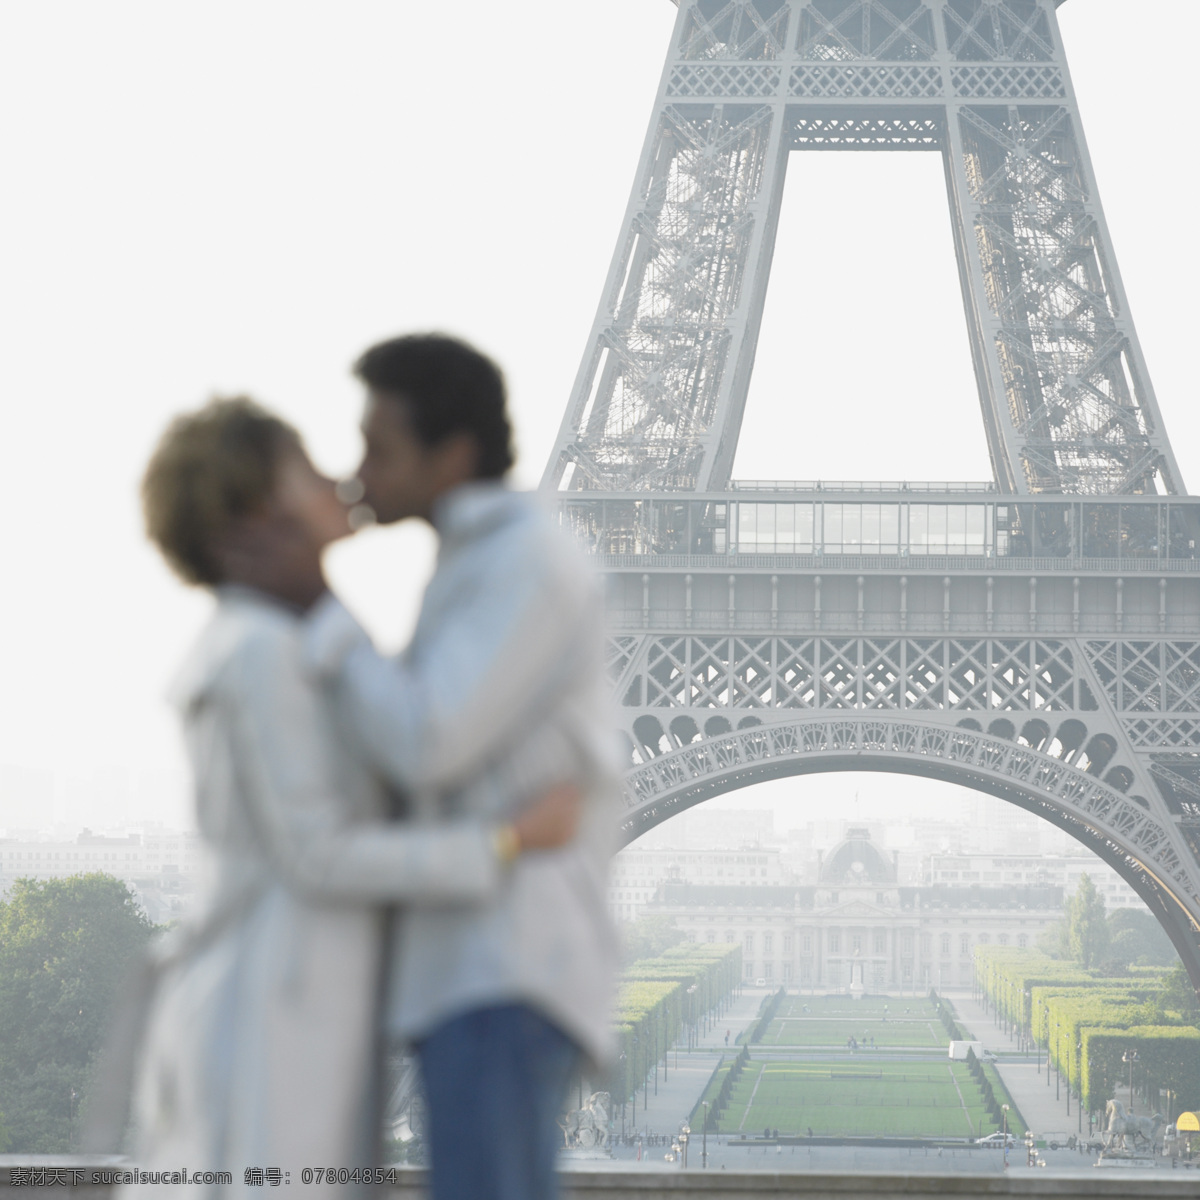 埃菲尔铁塔 接吻 情侣 外国男性 女性 性感美女 模特 恋人 外国夫妻 夫妇 恩爱 暧昧 温馨浪漫 幸福 巴黎 风景图片